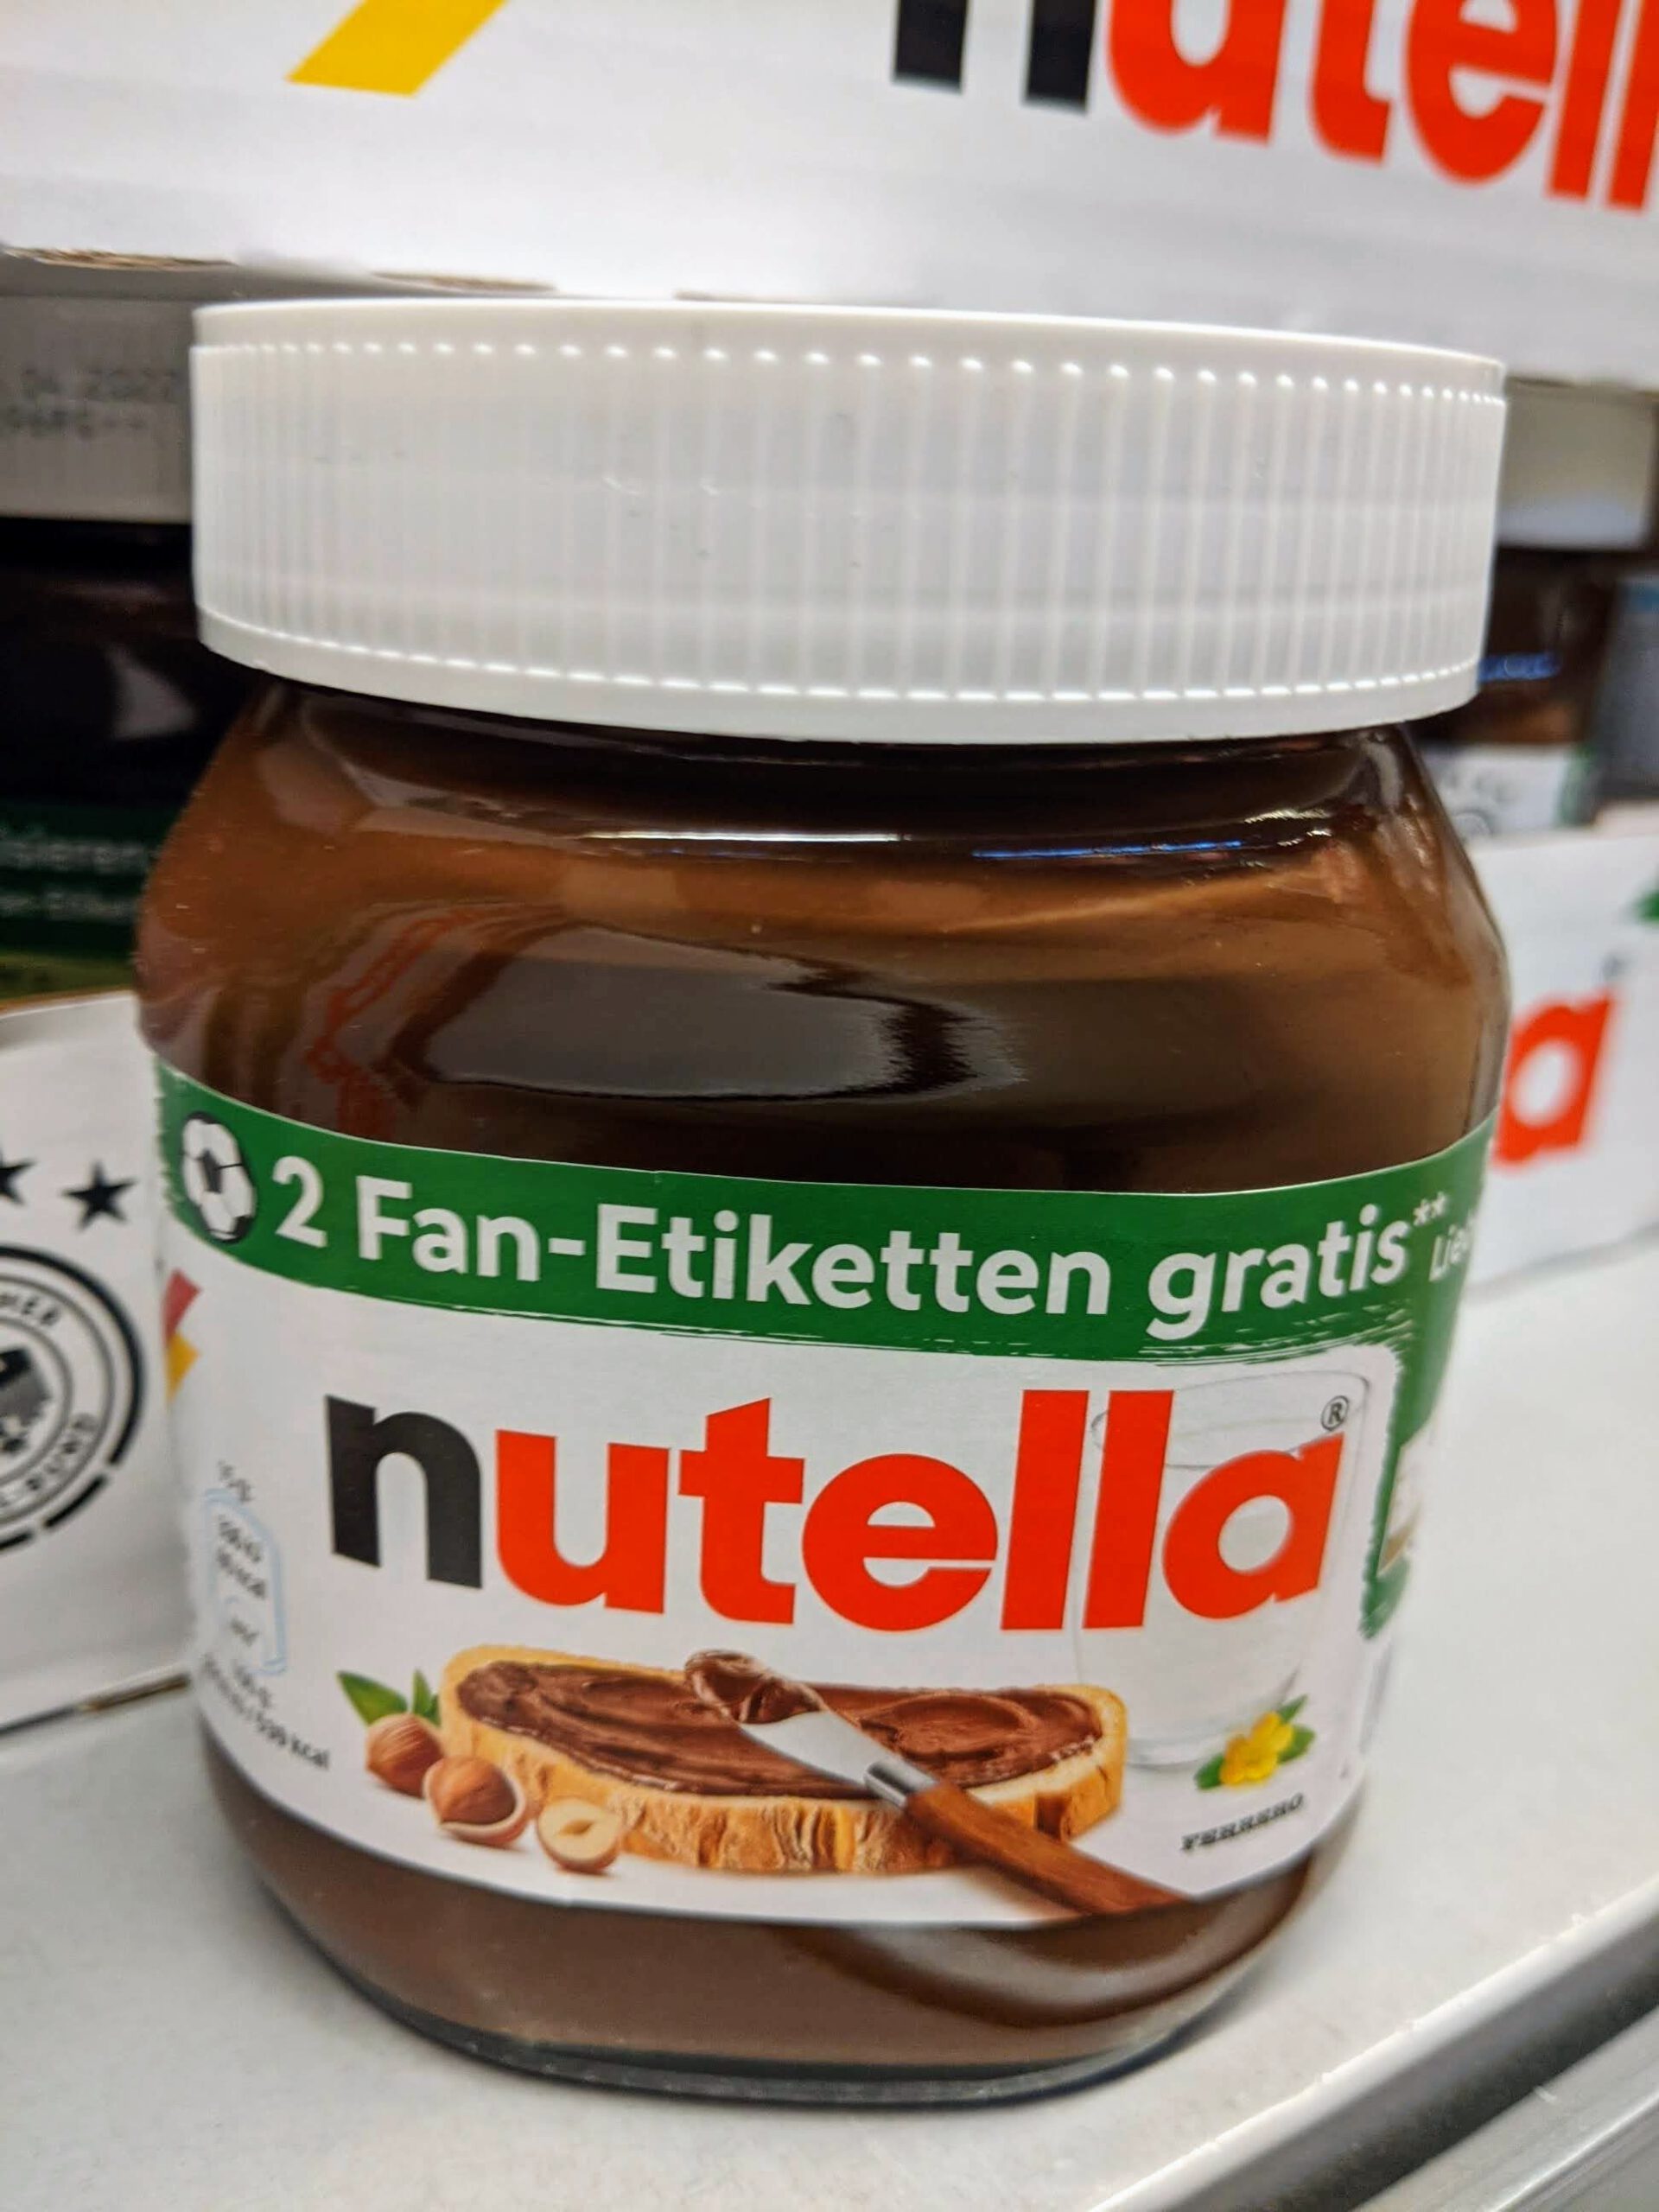 Nutella: Code eingeben, zwei Fan-Etiketten gratis erhalten